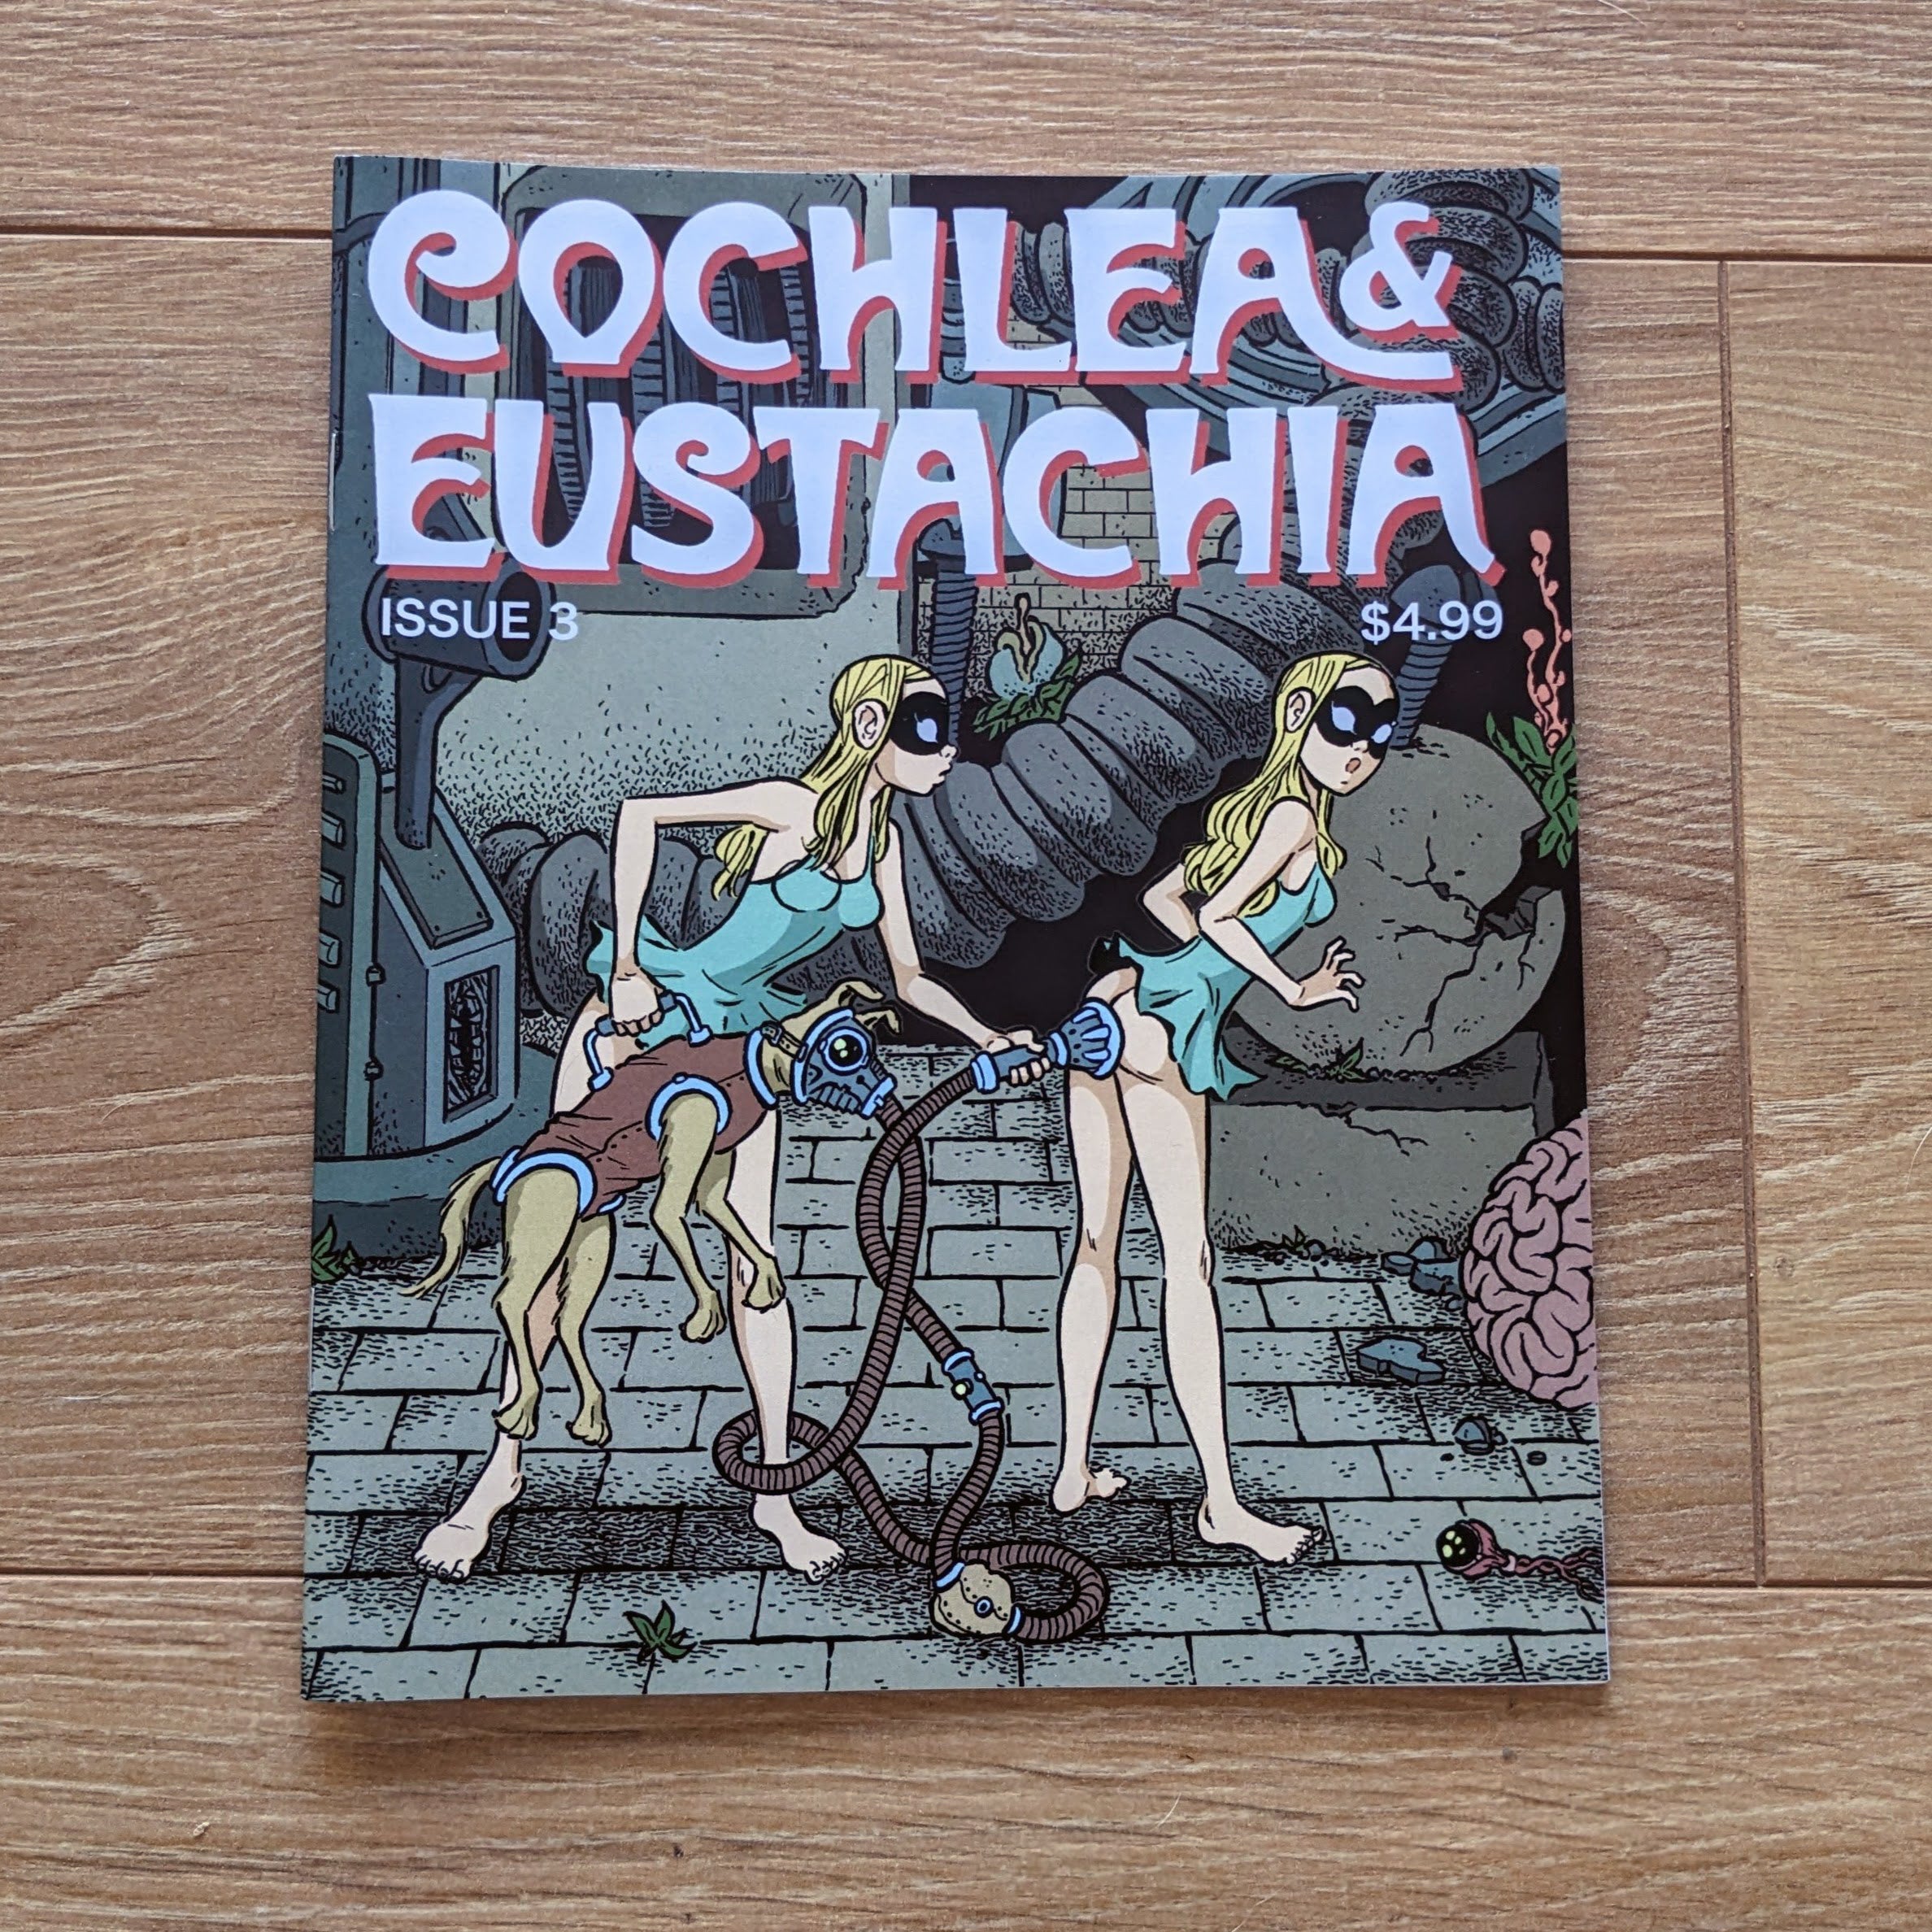 Cochlea & Eustachia ( #1